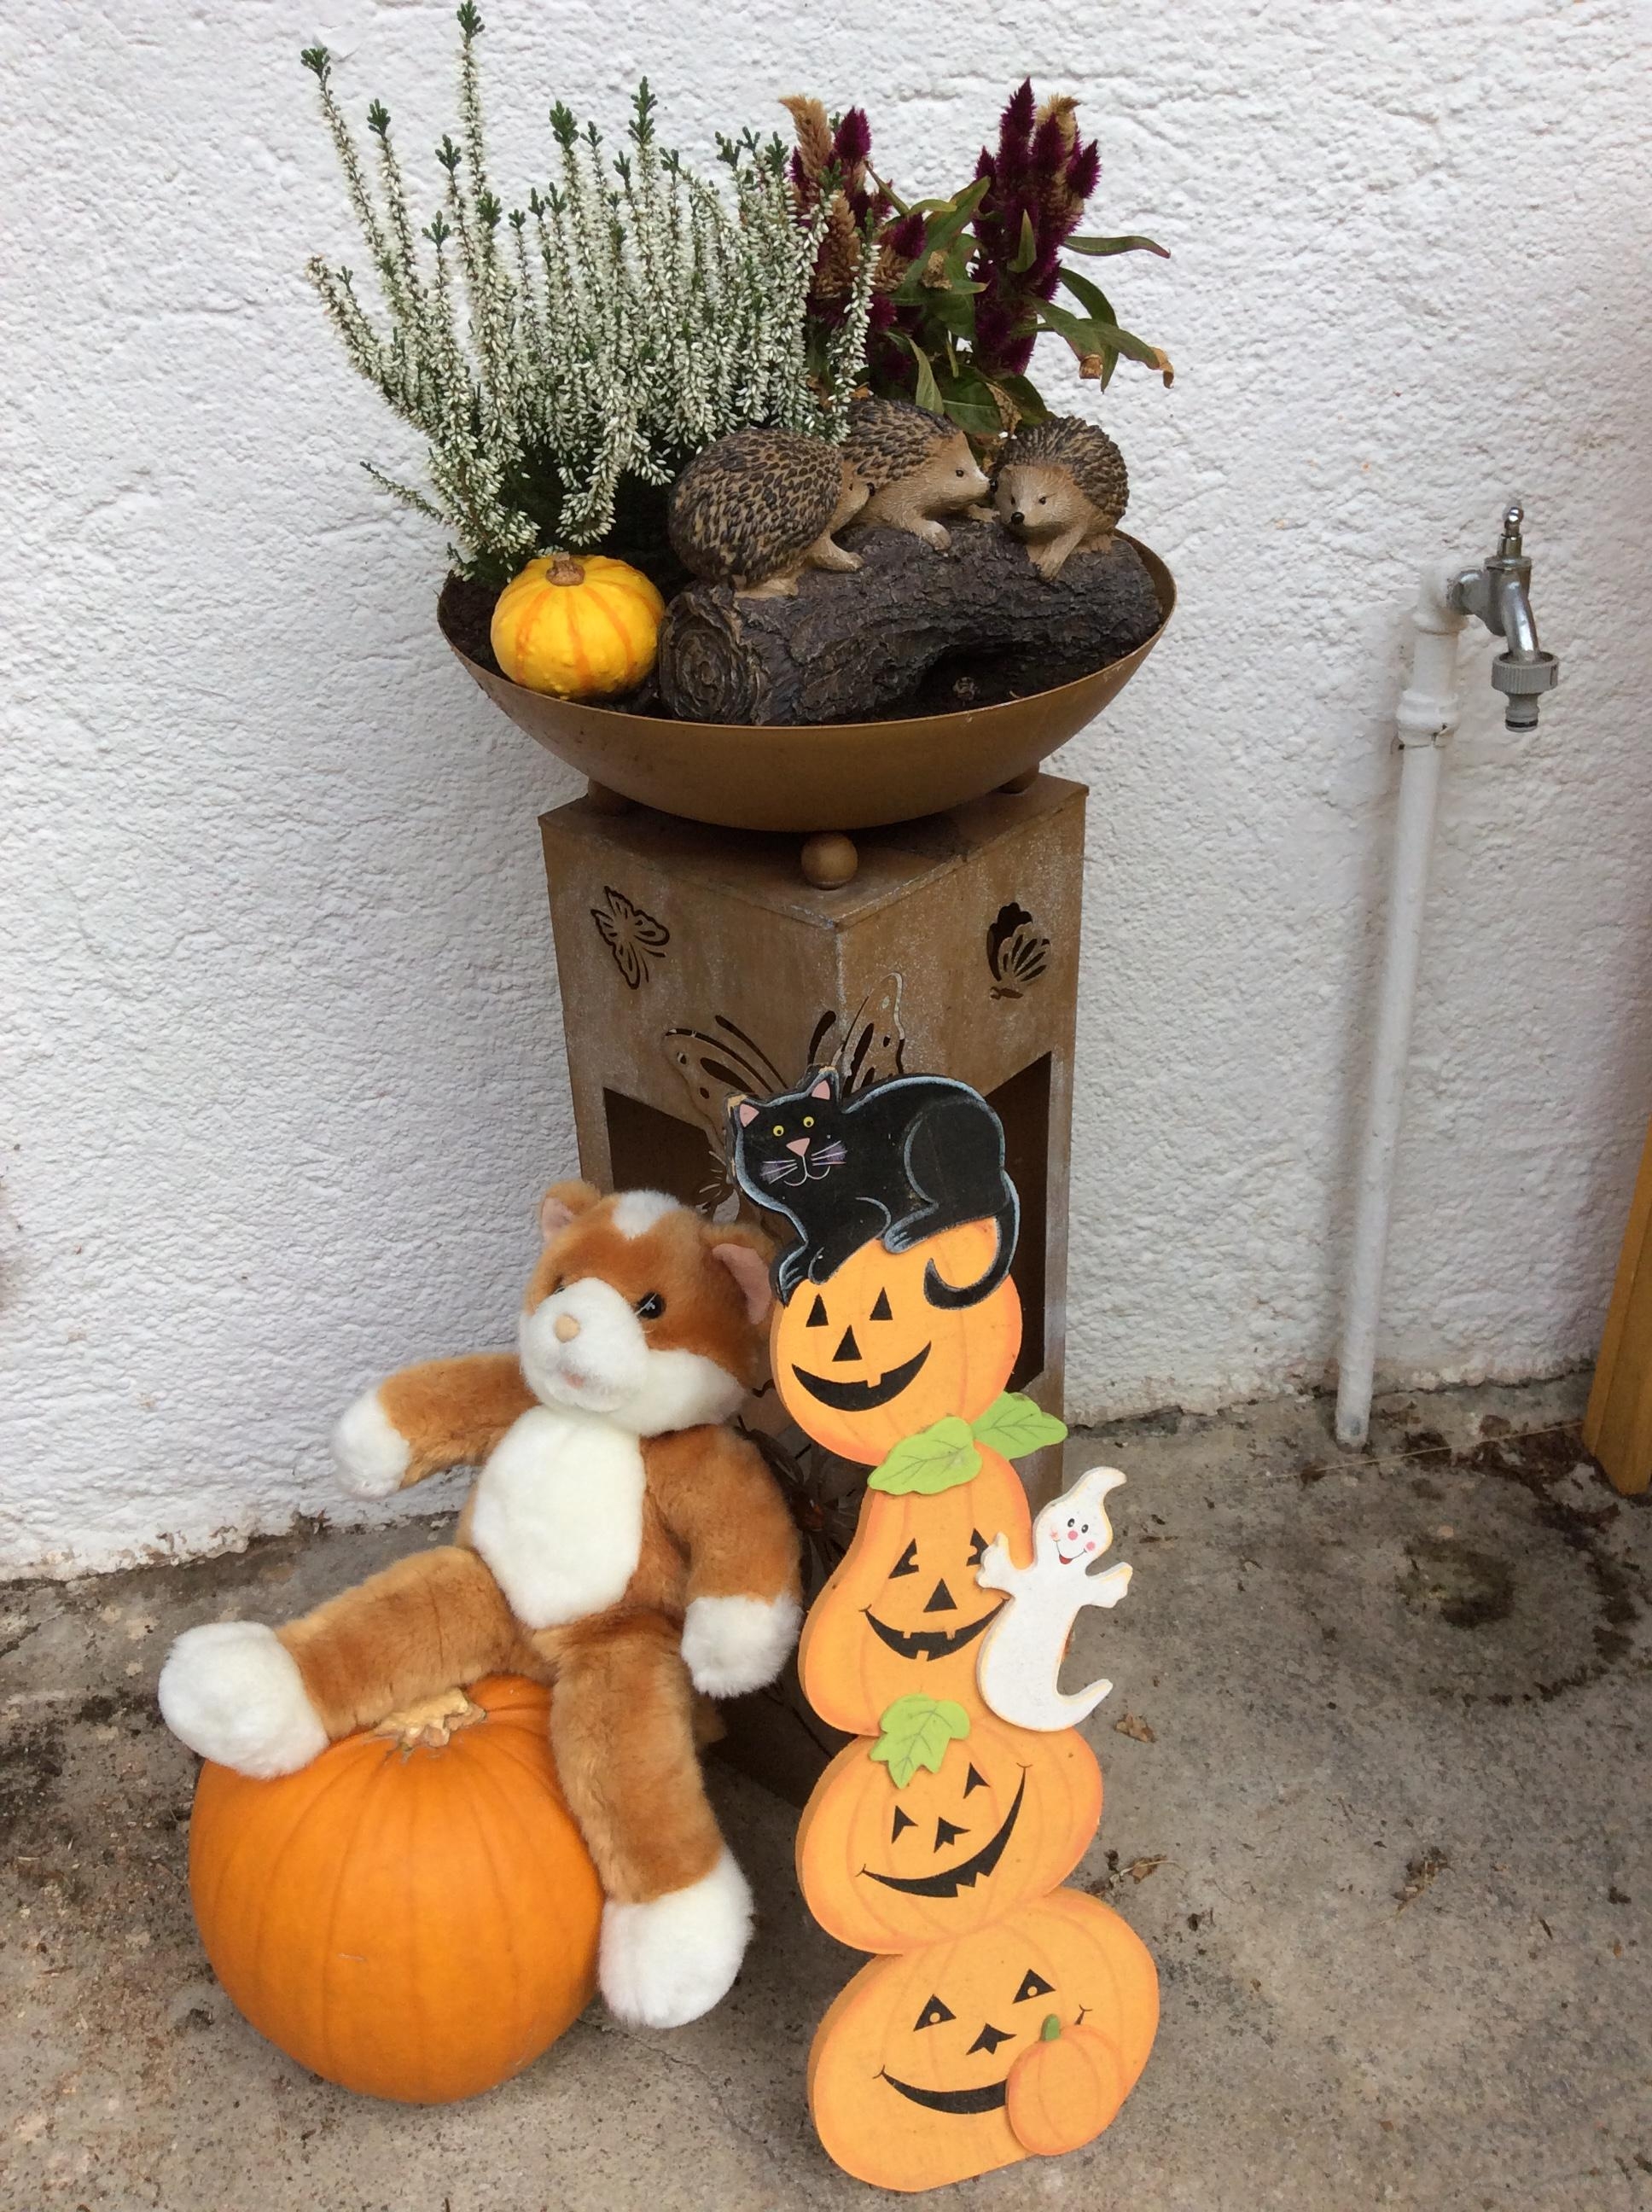 #Halloween 
Deko vor der Haustüre.....